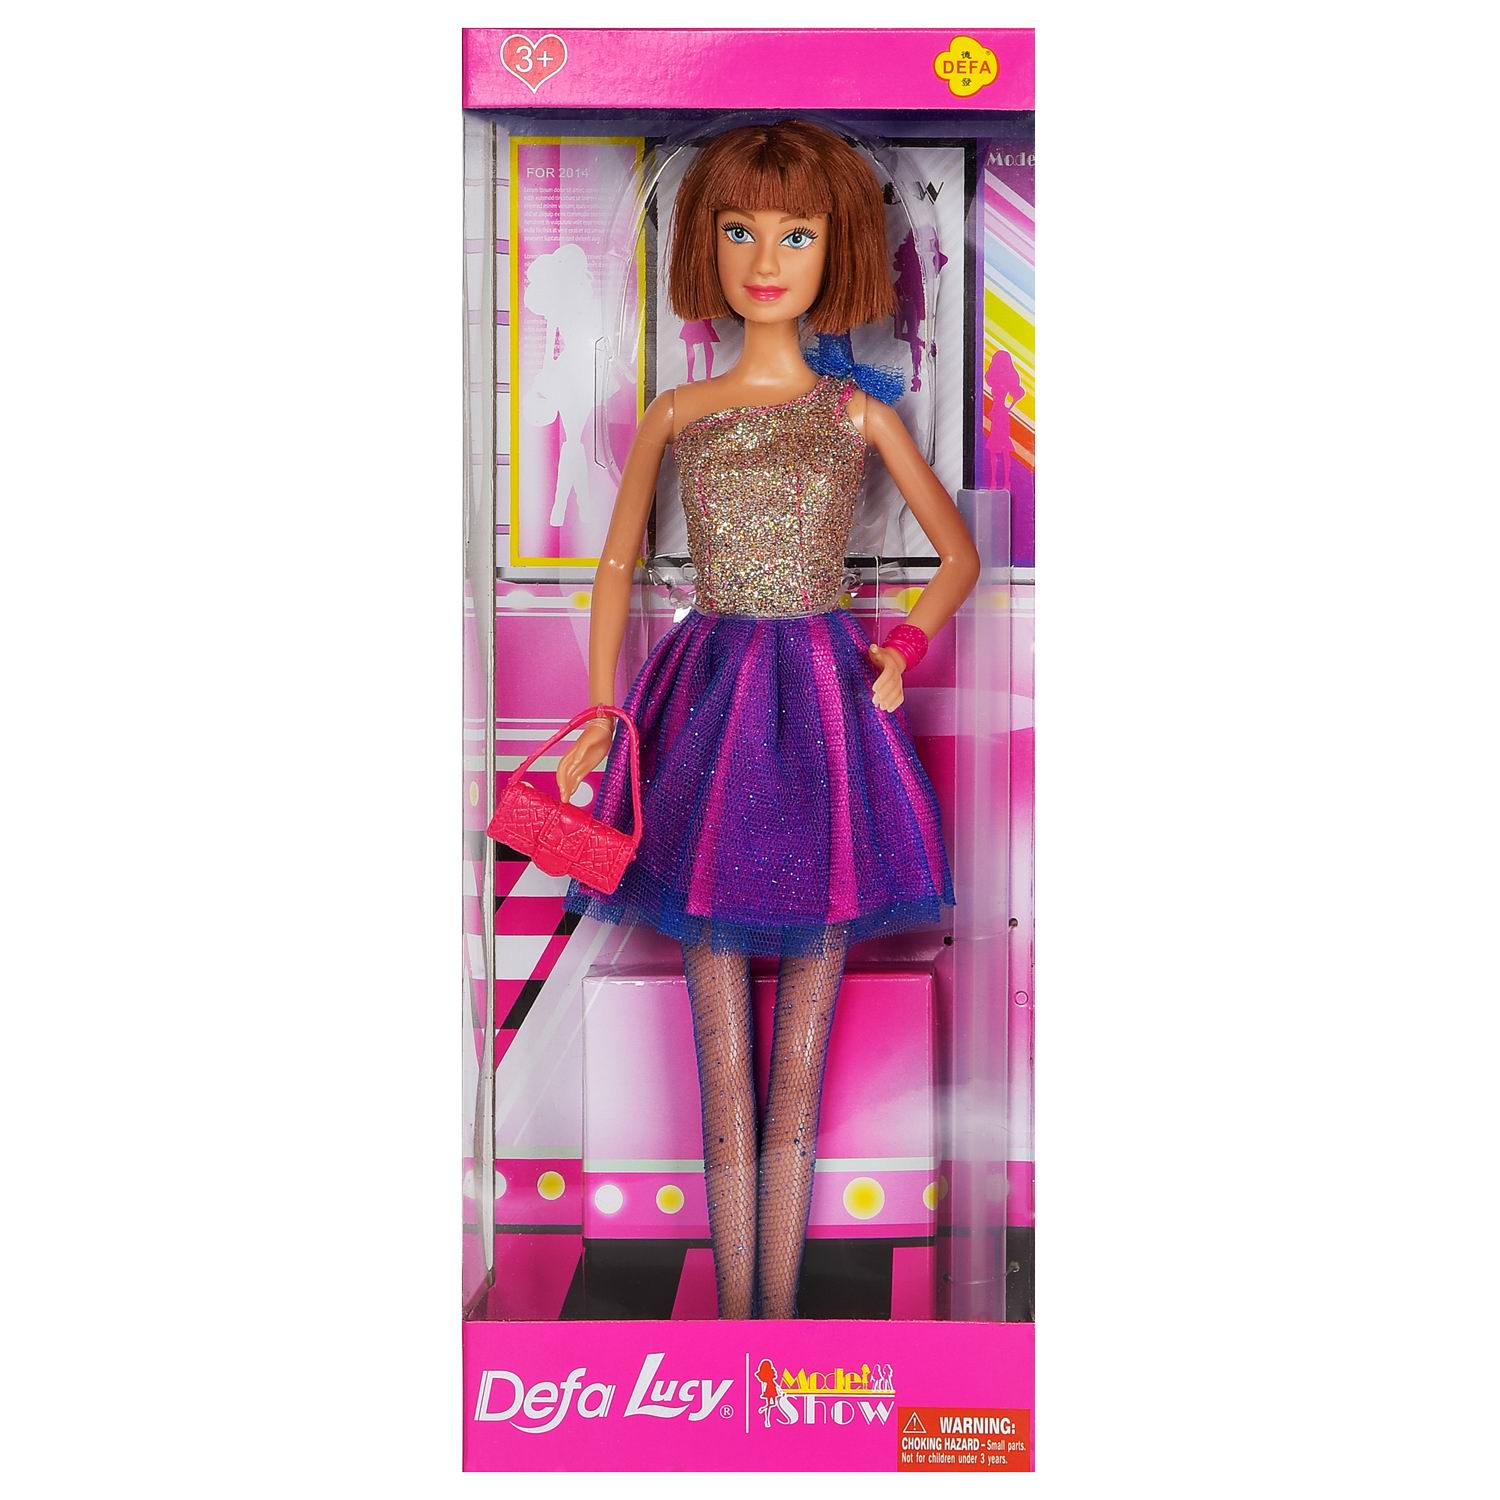 Кукла Defa Lucy Вечернее платье короткое, золотистый верх, фиолетовая юбка, 29 см кукла керамика василиса в белом платье с деталями клетку 30 см